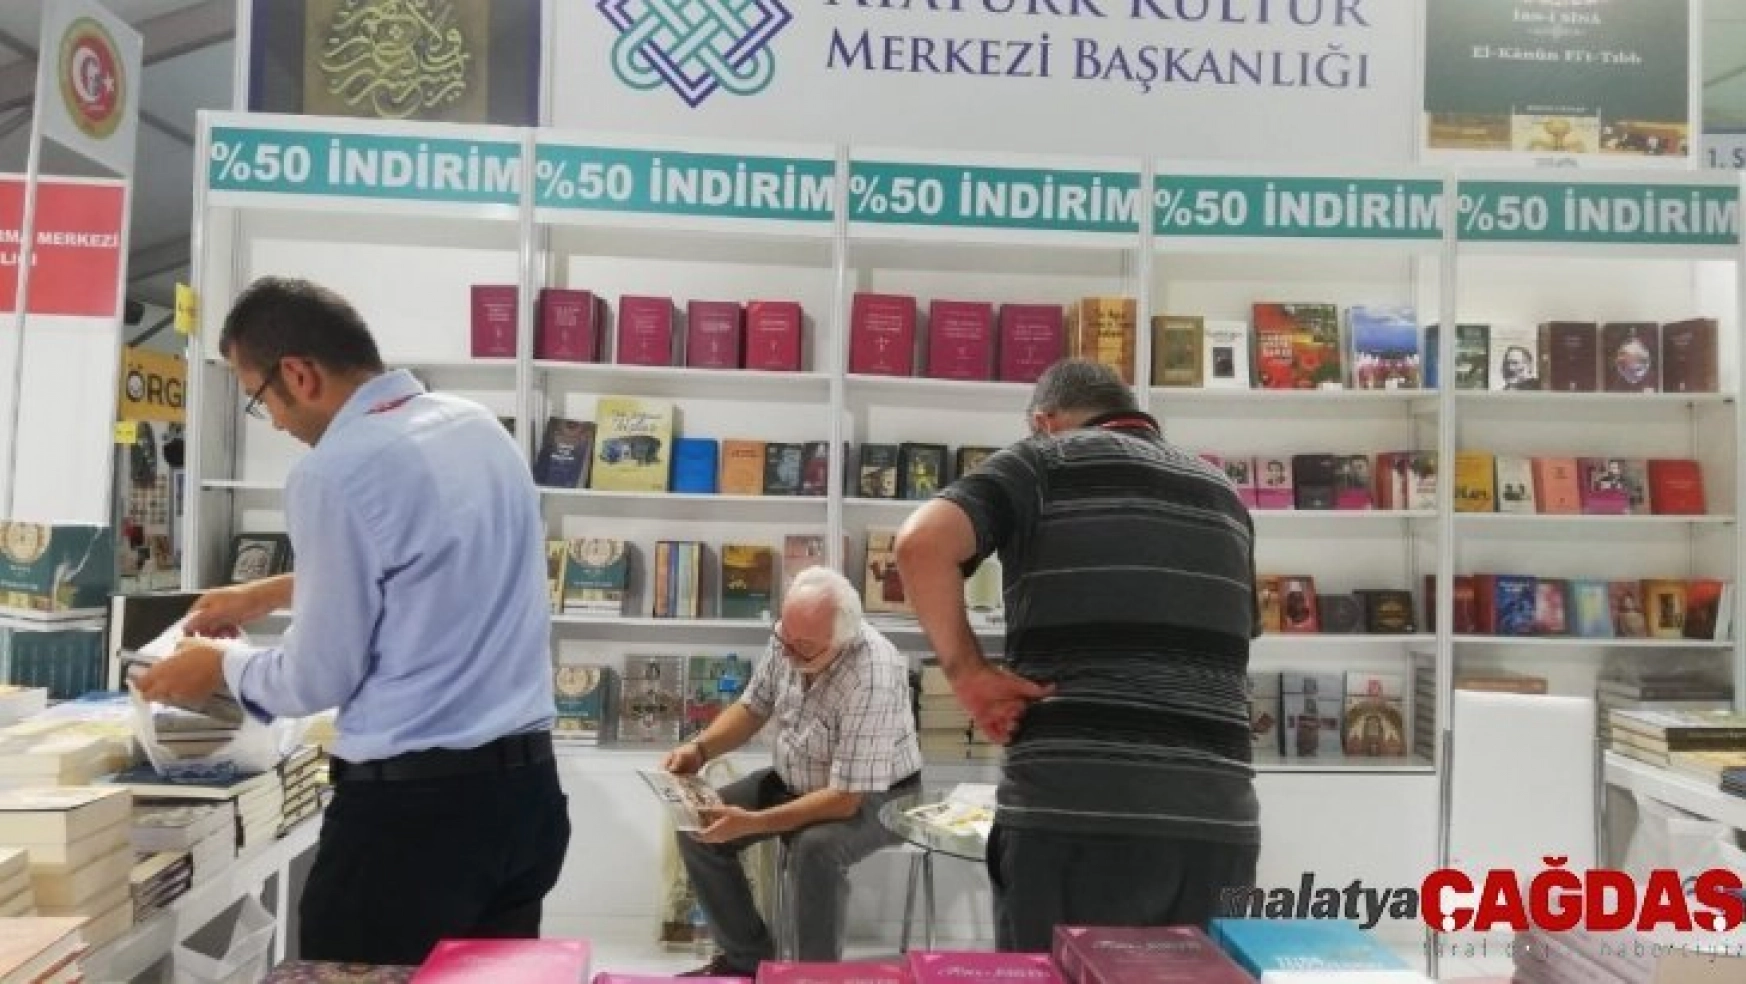 Atatürk Kültür Merkezi Başkanlığı 3'üncü Eskişehir Kitap Fuarında